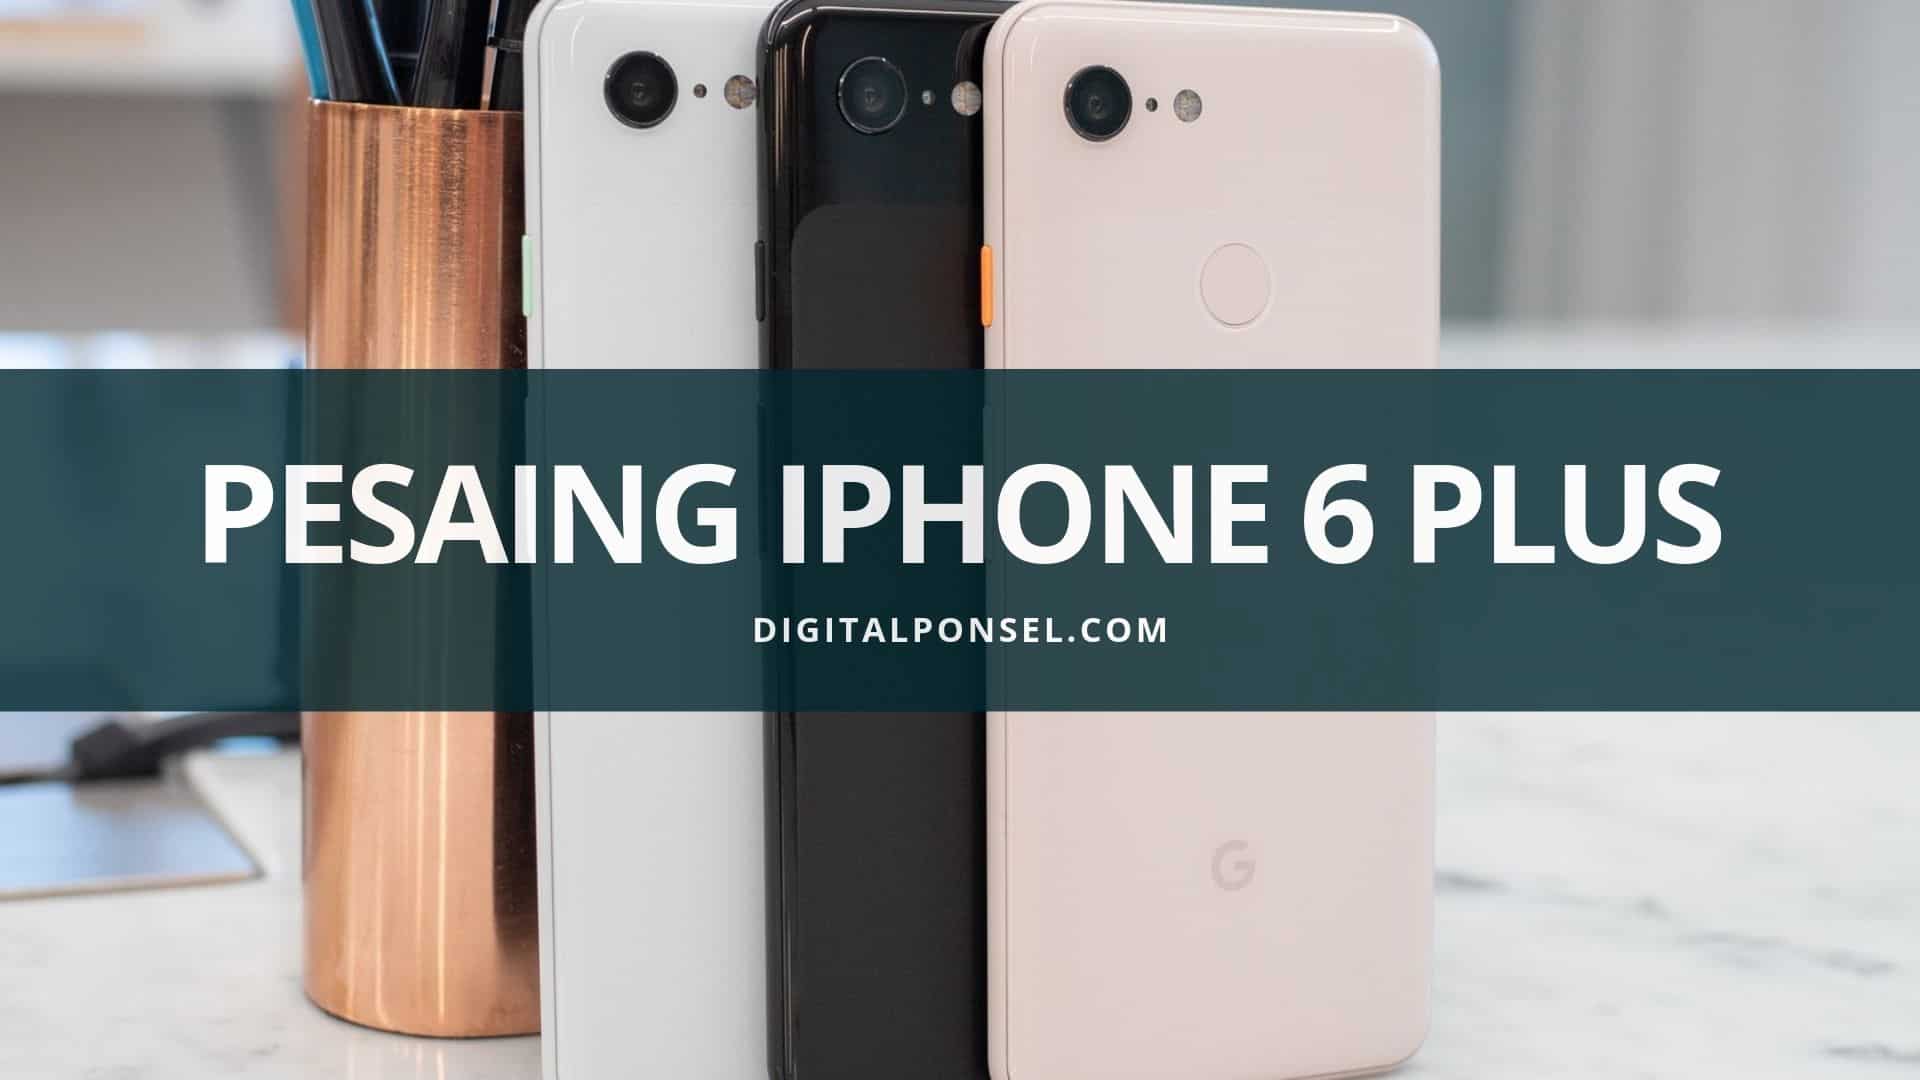 Ini 5 Smartphone Phablet Spesifikasi “Wow” Pesaing iPhone 6 Plus